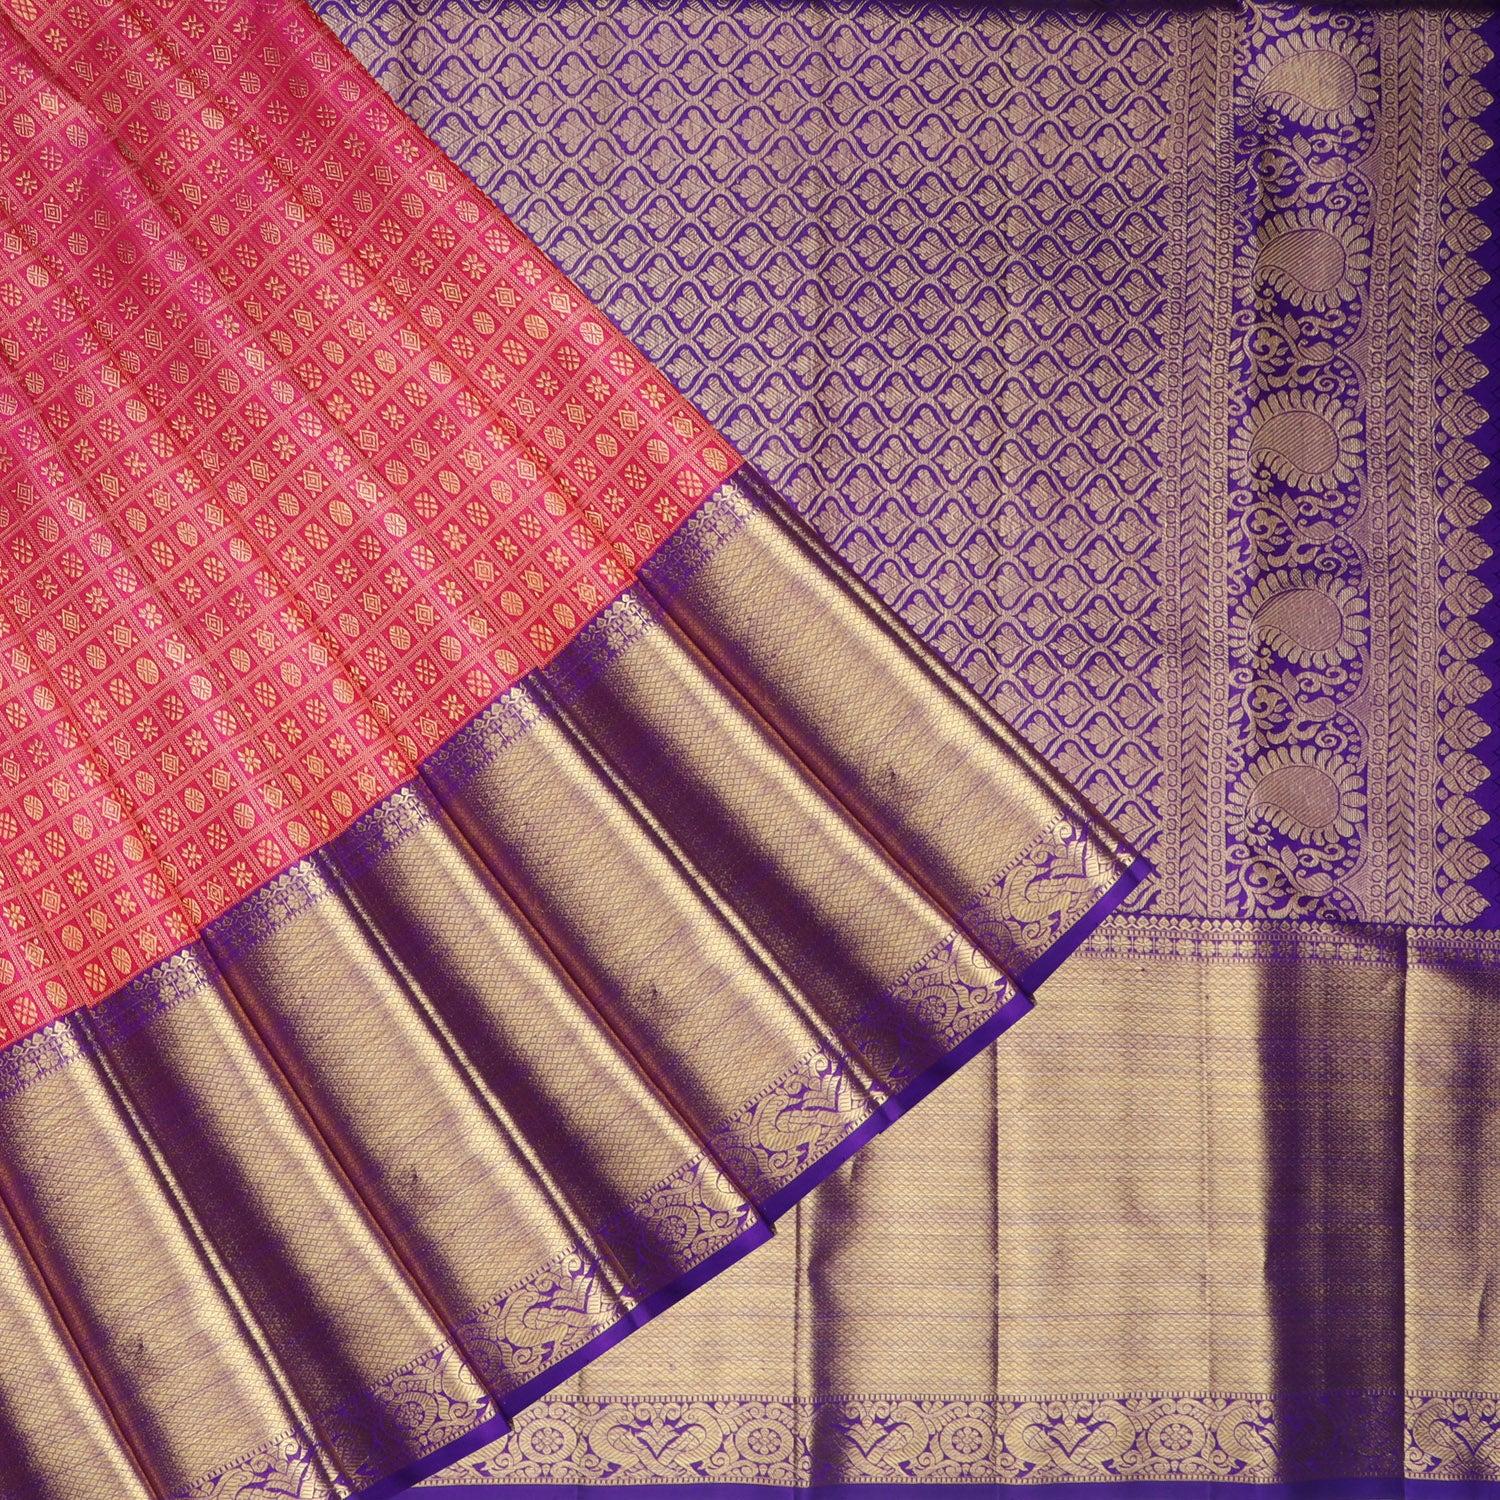 bright pink kanjivaram silk saree with floral butis in checks pattern